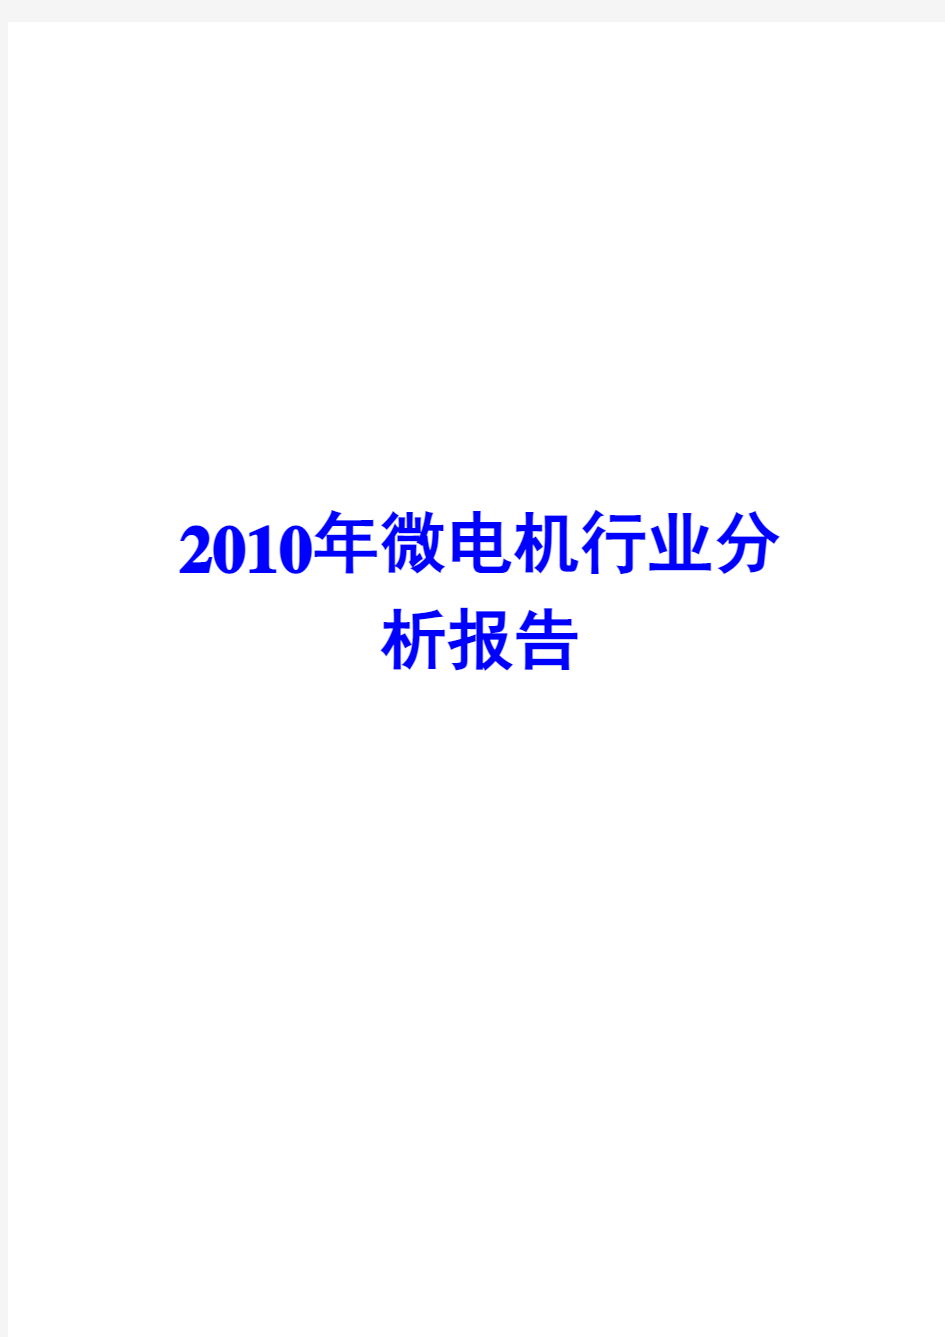 2010年微电机行业分析报告